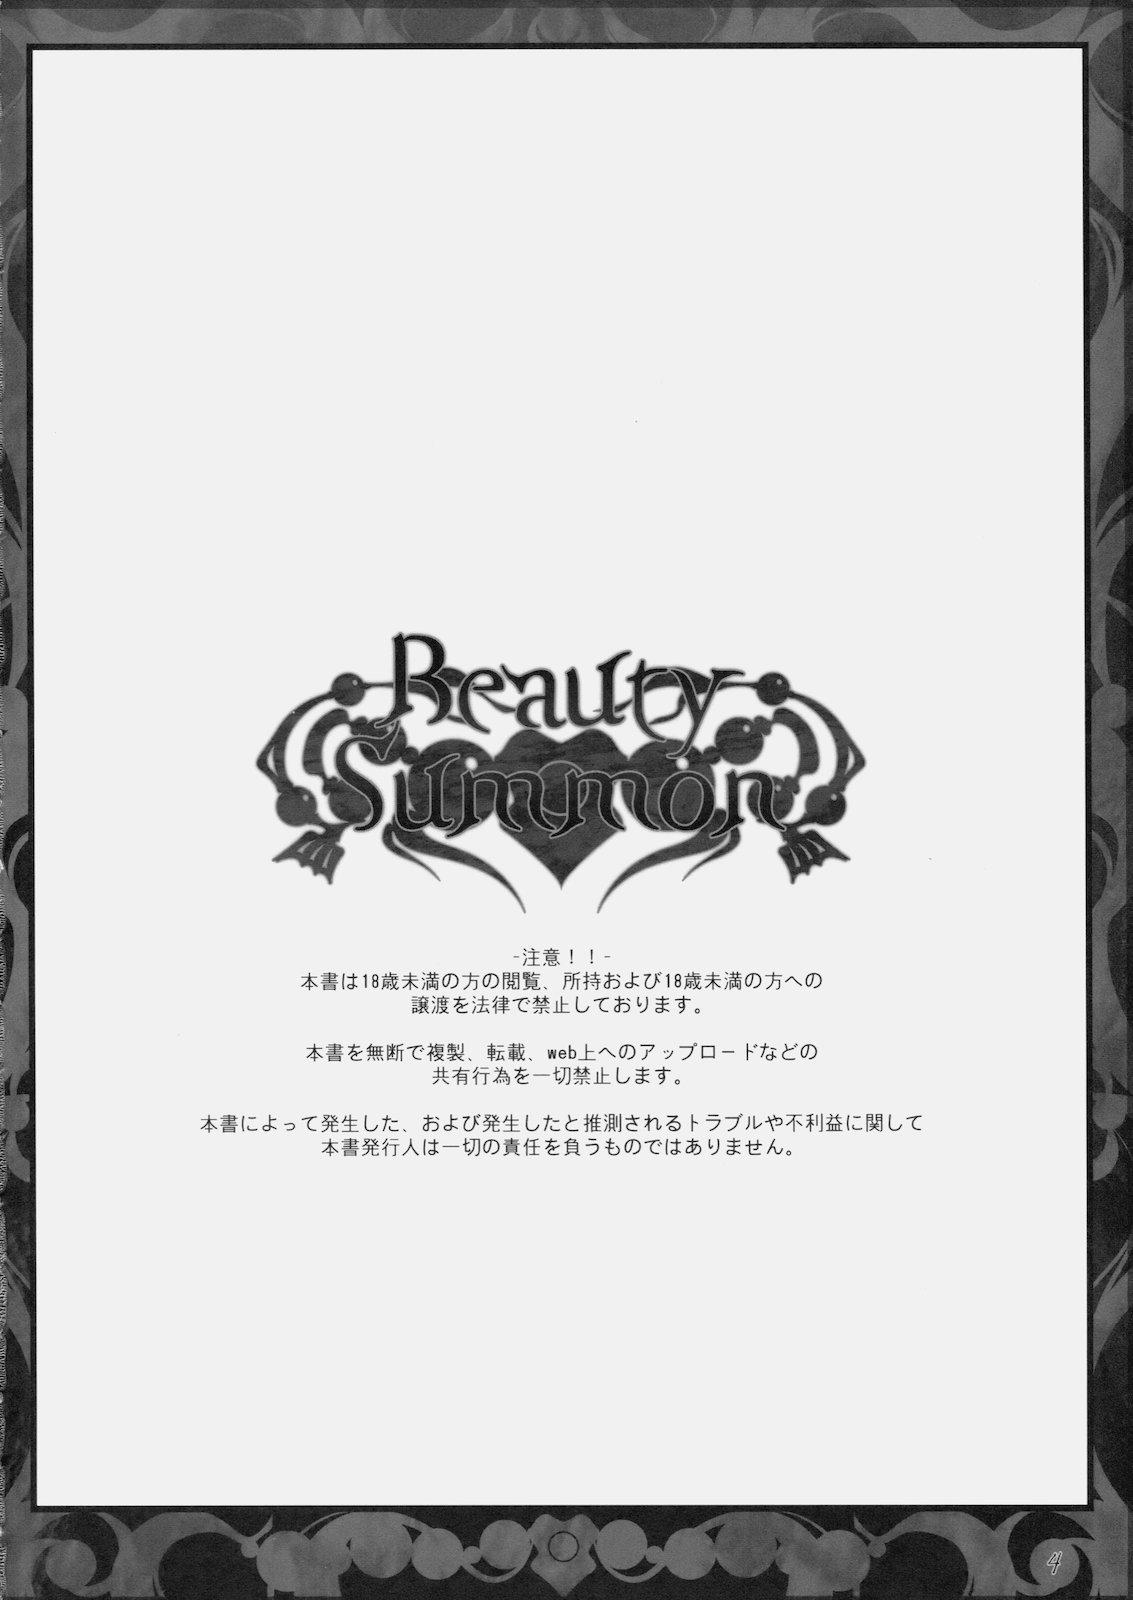 Tetas Grandes Beauty Summon - Final fantasy iv Stream - Page 4